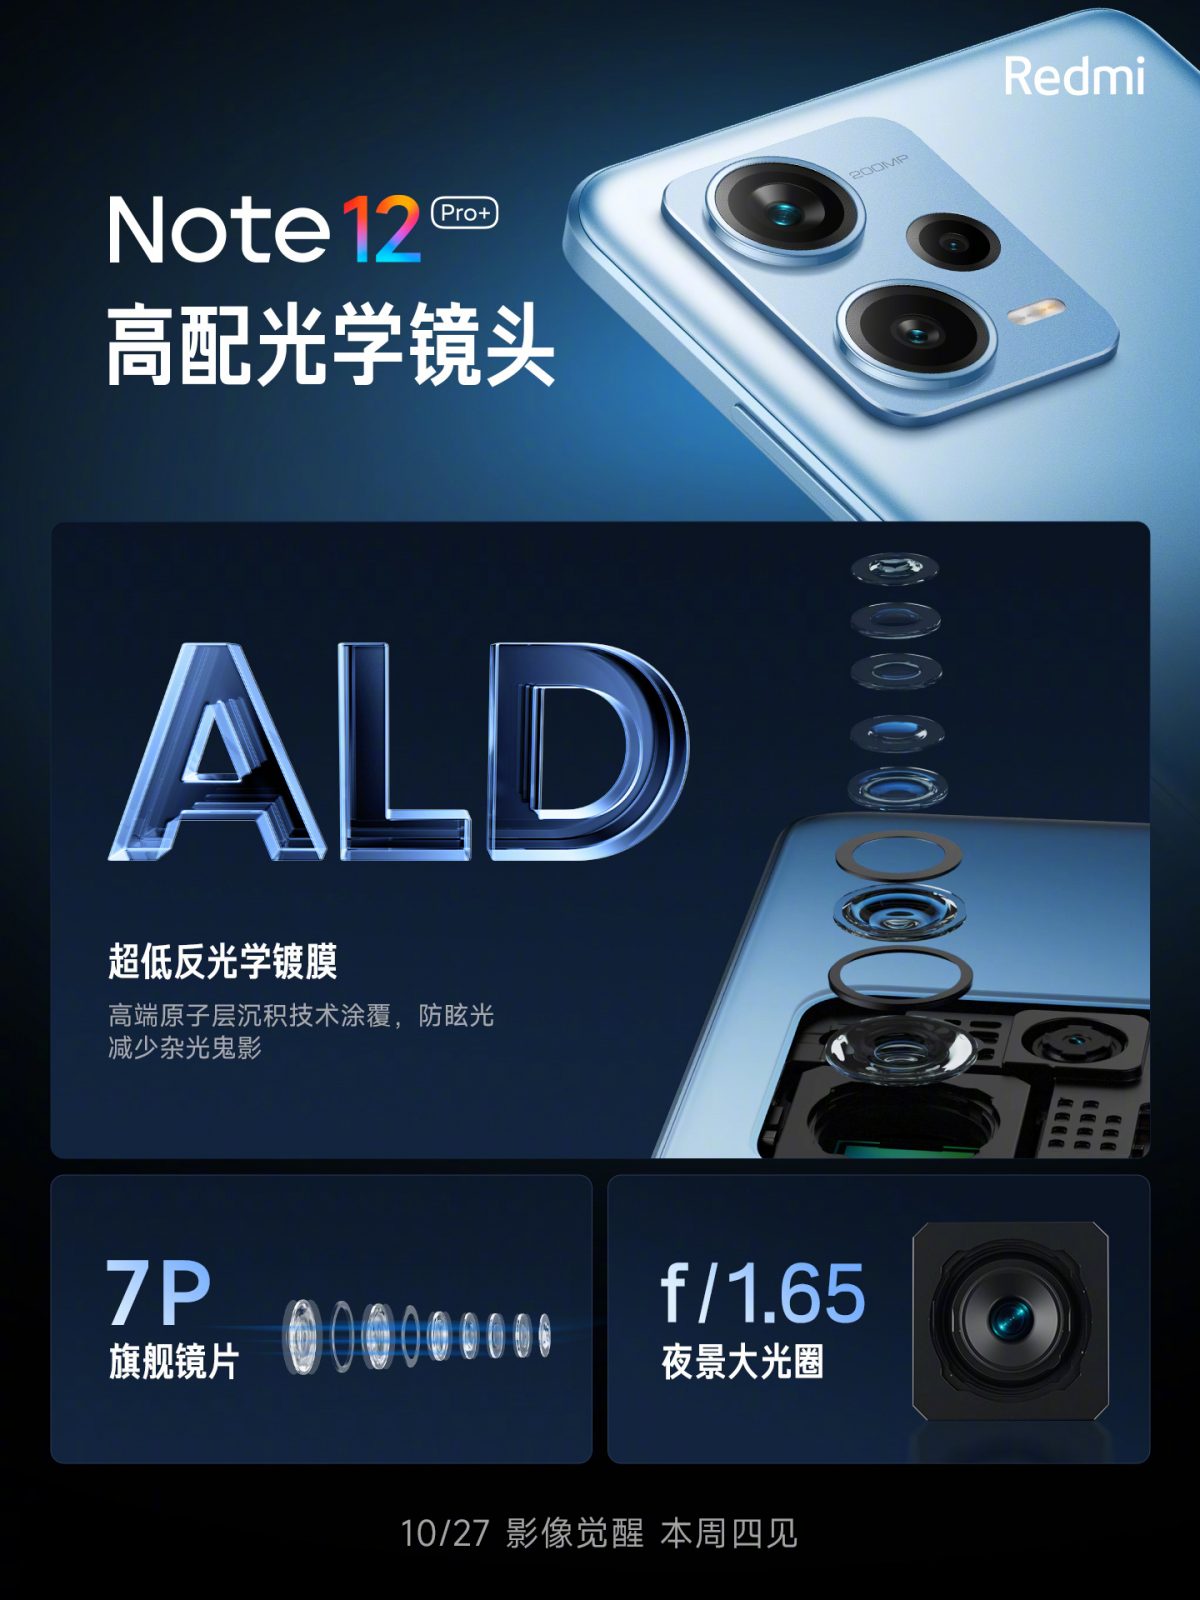 Redmi Note 12 Pro Plus cena specyfikacja aparat 200 MP